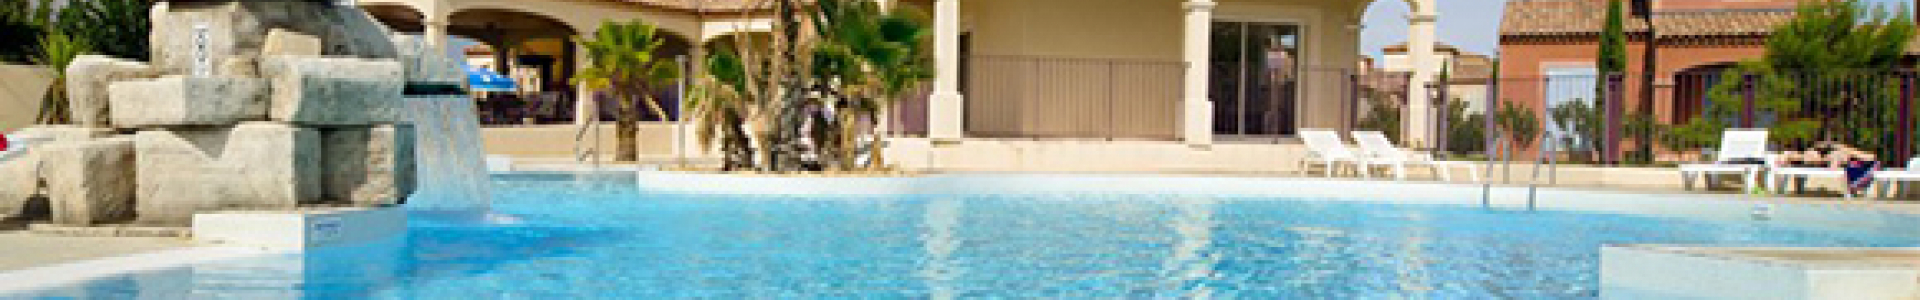 Locasun vp : Languedoc, 3 ventes flash 8j/7n en résidence avec piscine, jusqu'à - 43%